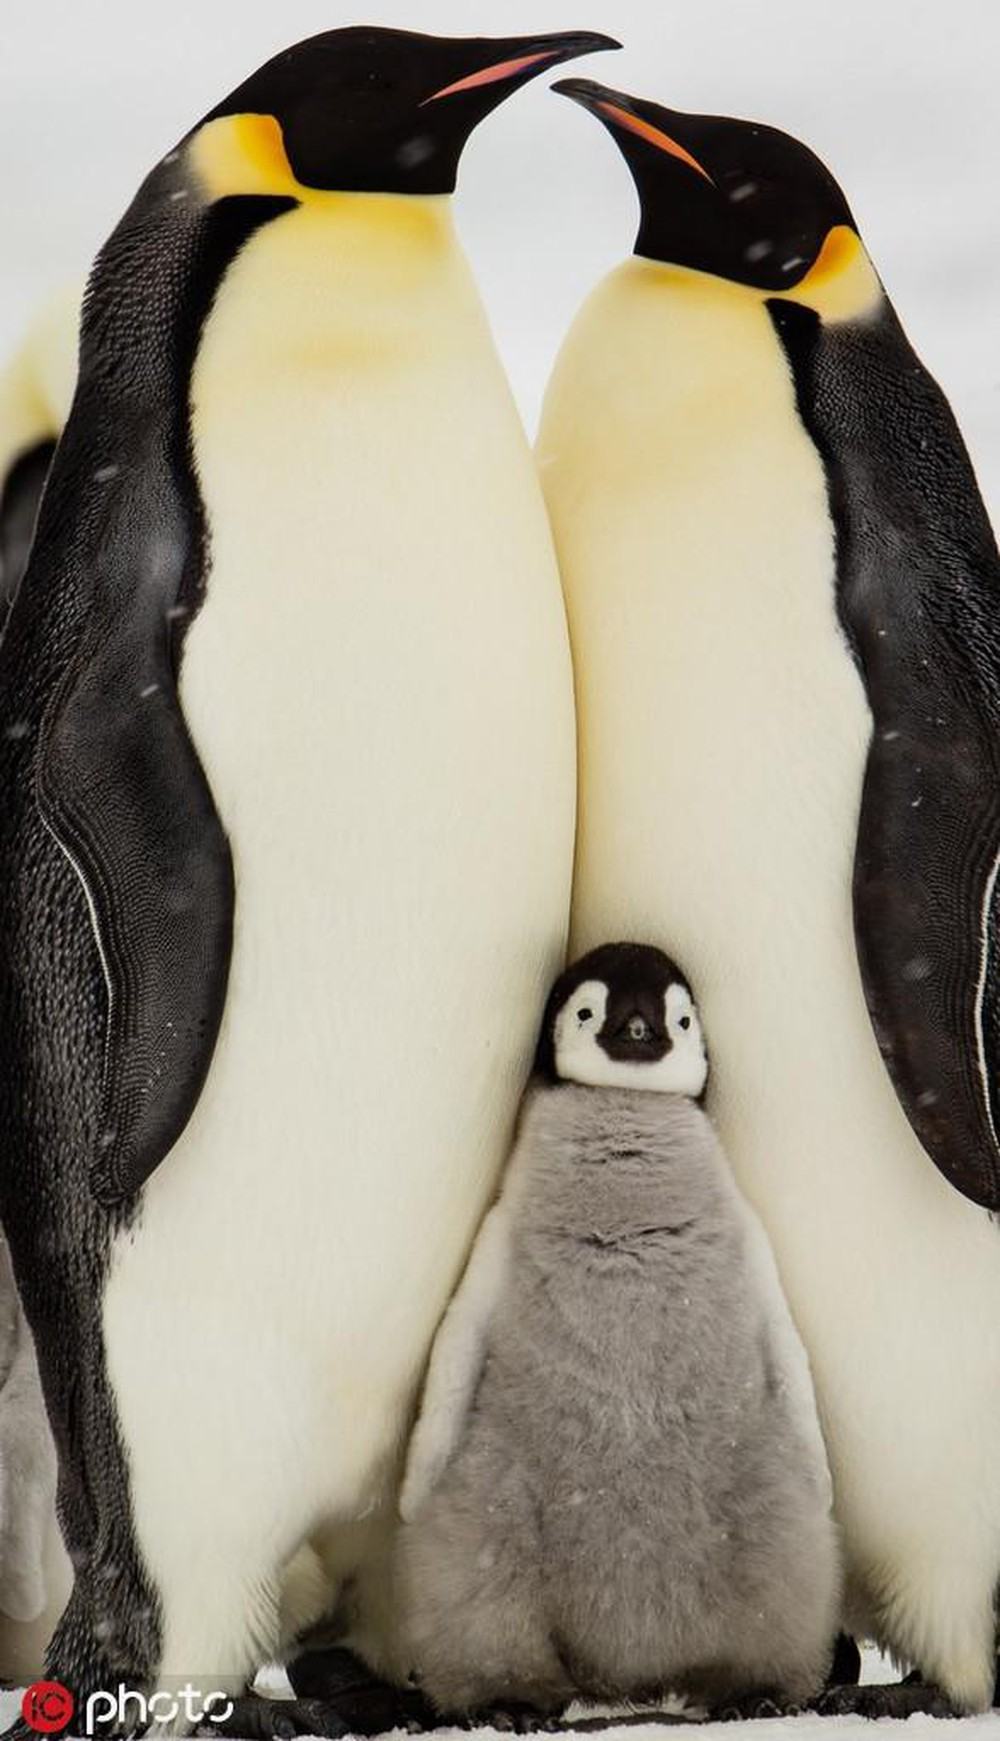 Gia đình chim cánh cụt nương tựa vào nhau để sưởi ấm